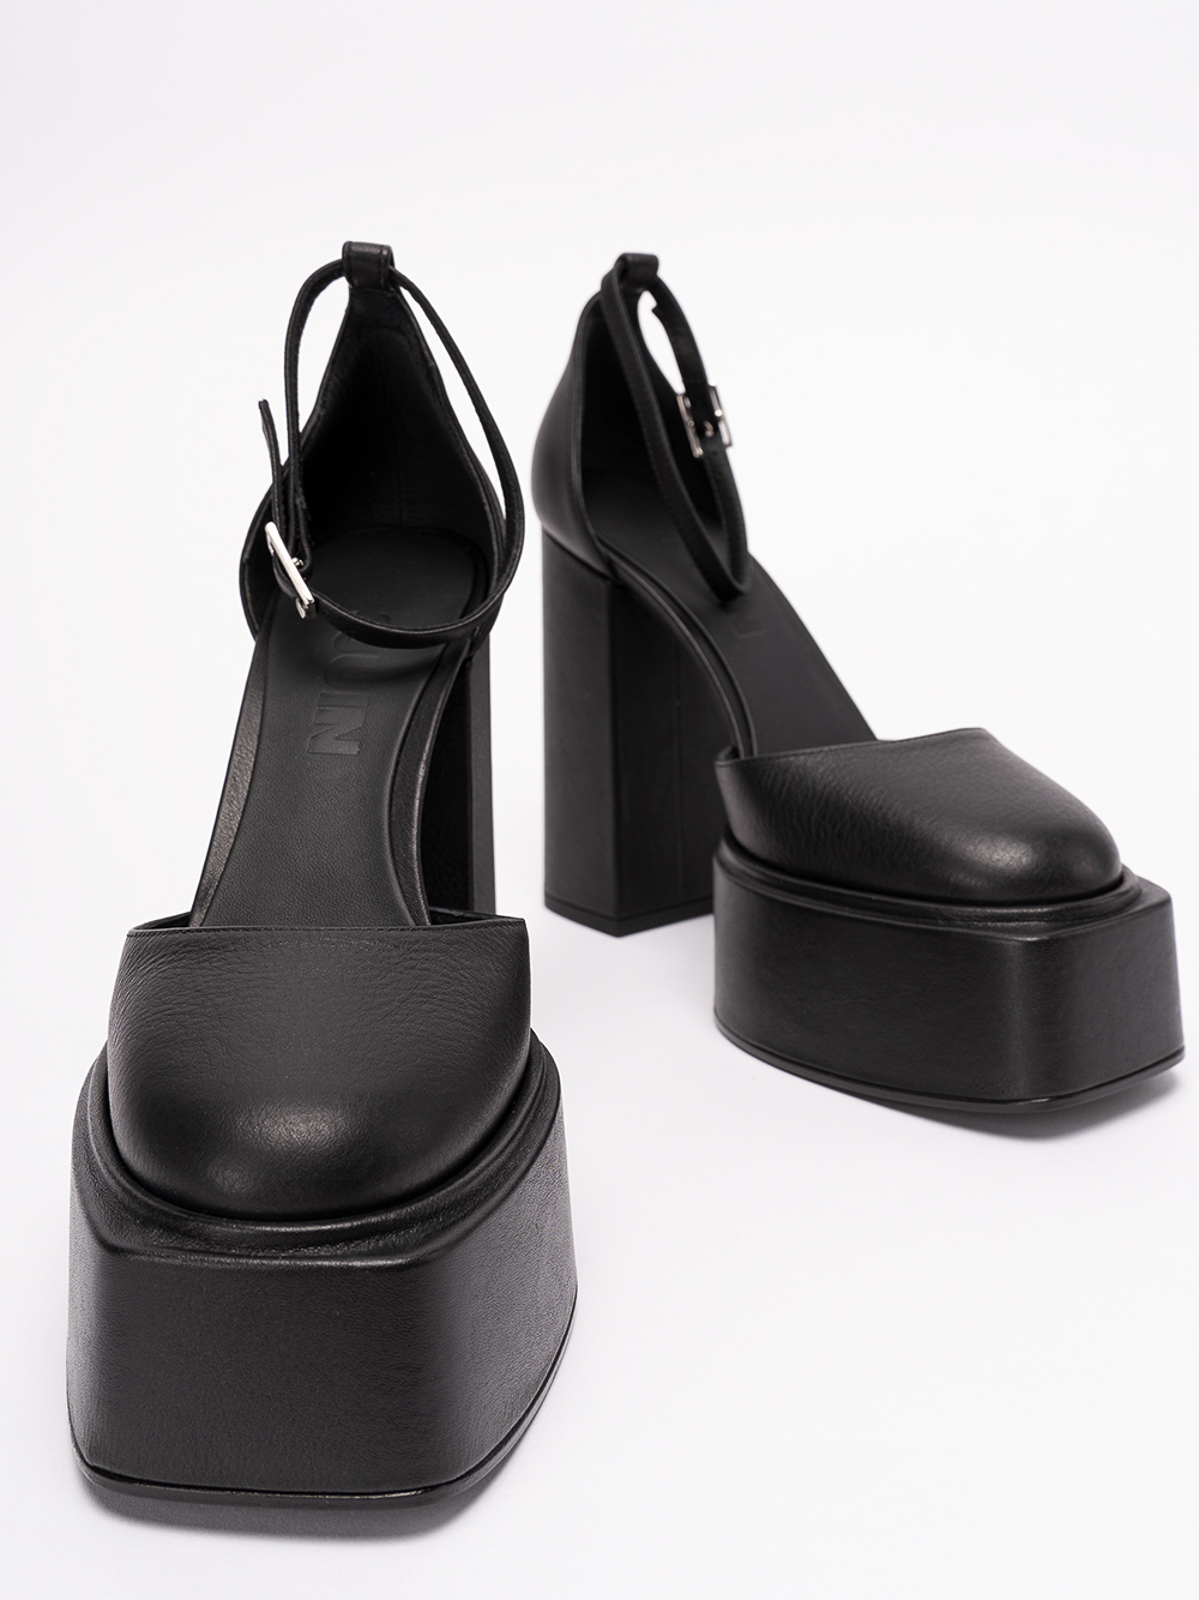 Court shoes 3Juin - Ambra 120 pumps - 323W5001O0657997 | iKRIX.com